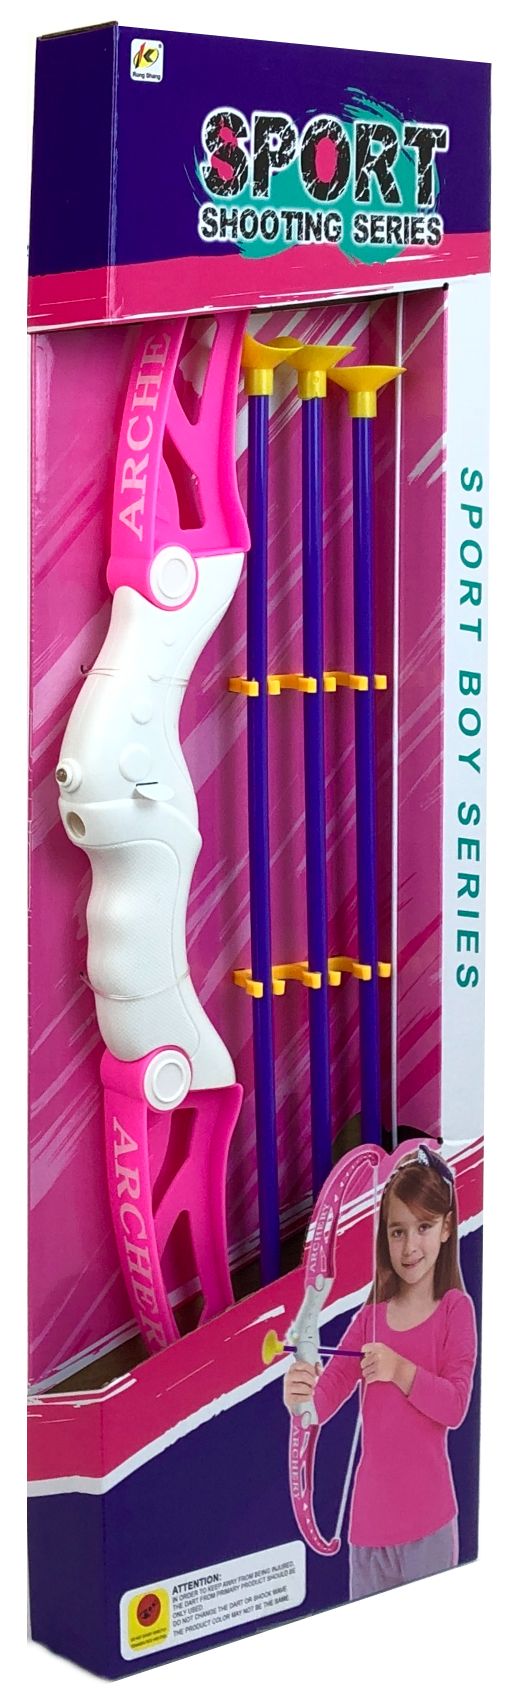 Игровой набор Лук игрушечный со стрелами Archery, Лук игрушечный, стрелы с присосками,55см